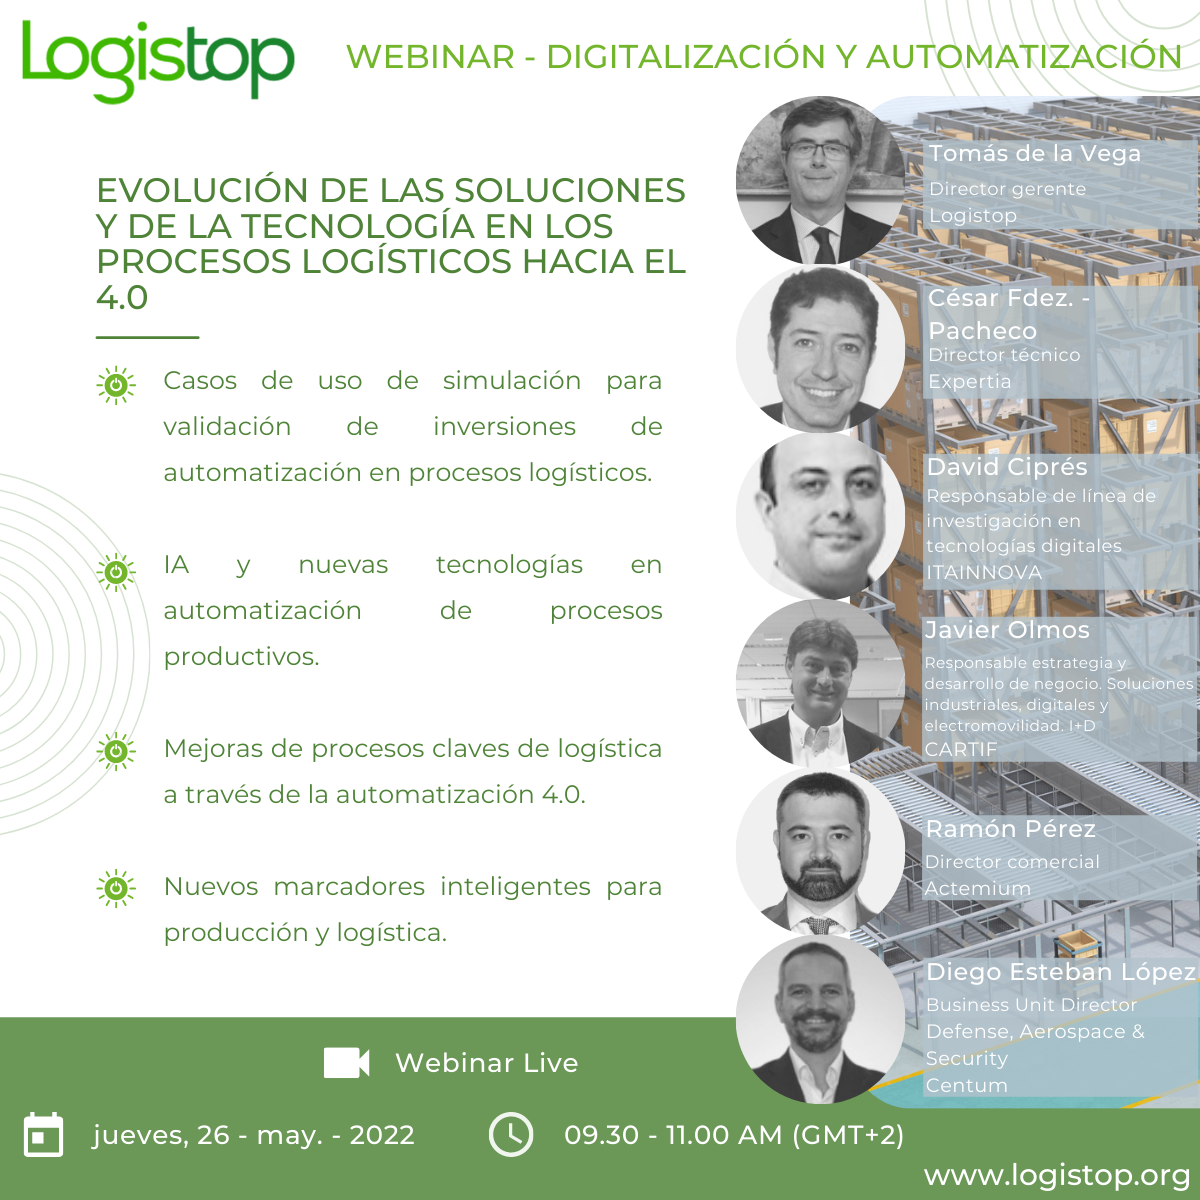 Webinar Logistop Evolución de las soluciones y la tecnología en los procesos logísticos hacia el 4.0